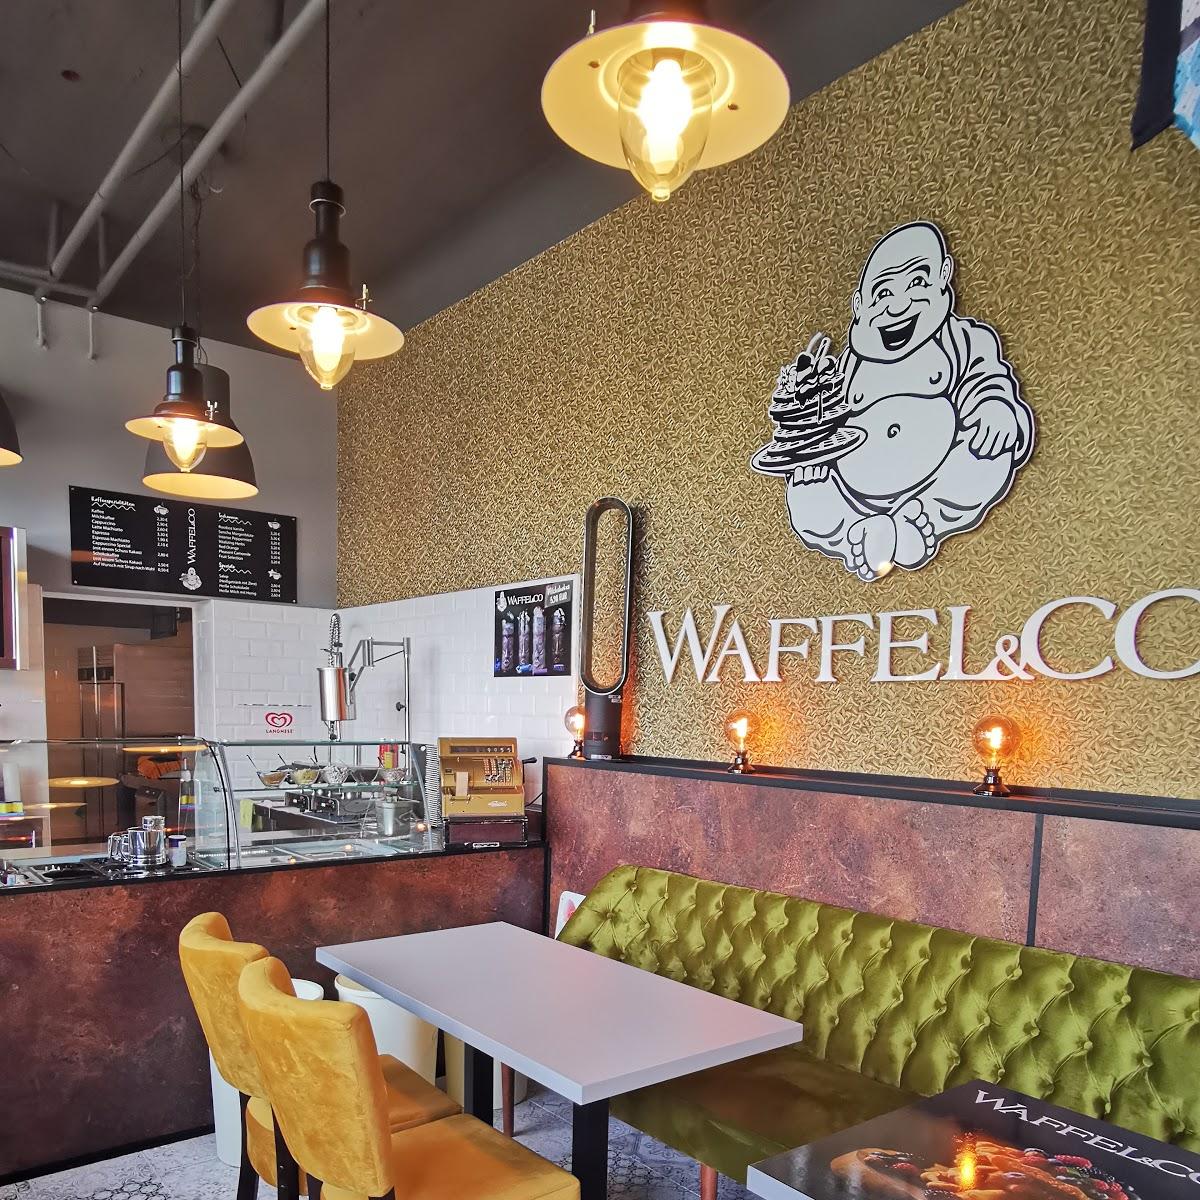 Restaurant "Waffel&Co" in Wolfsburg